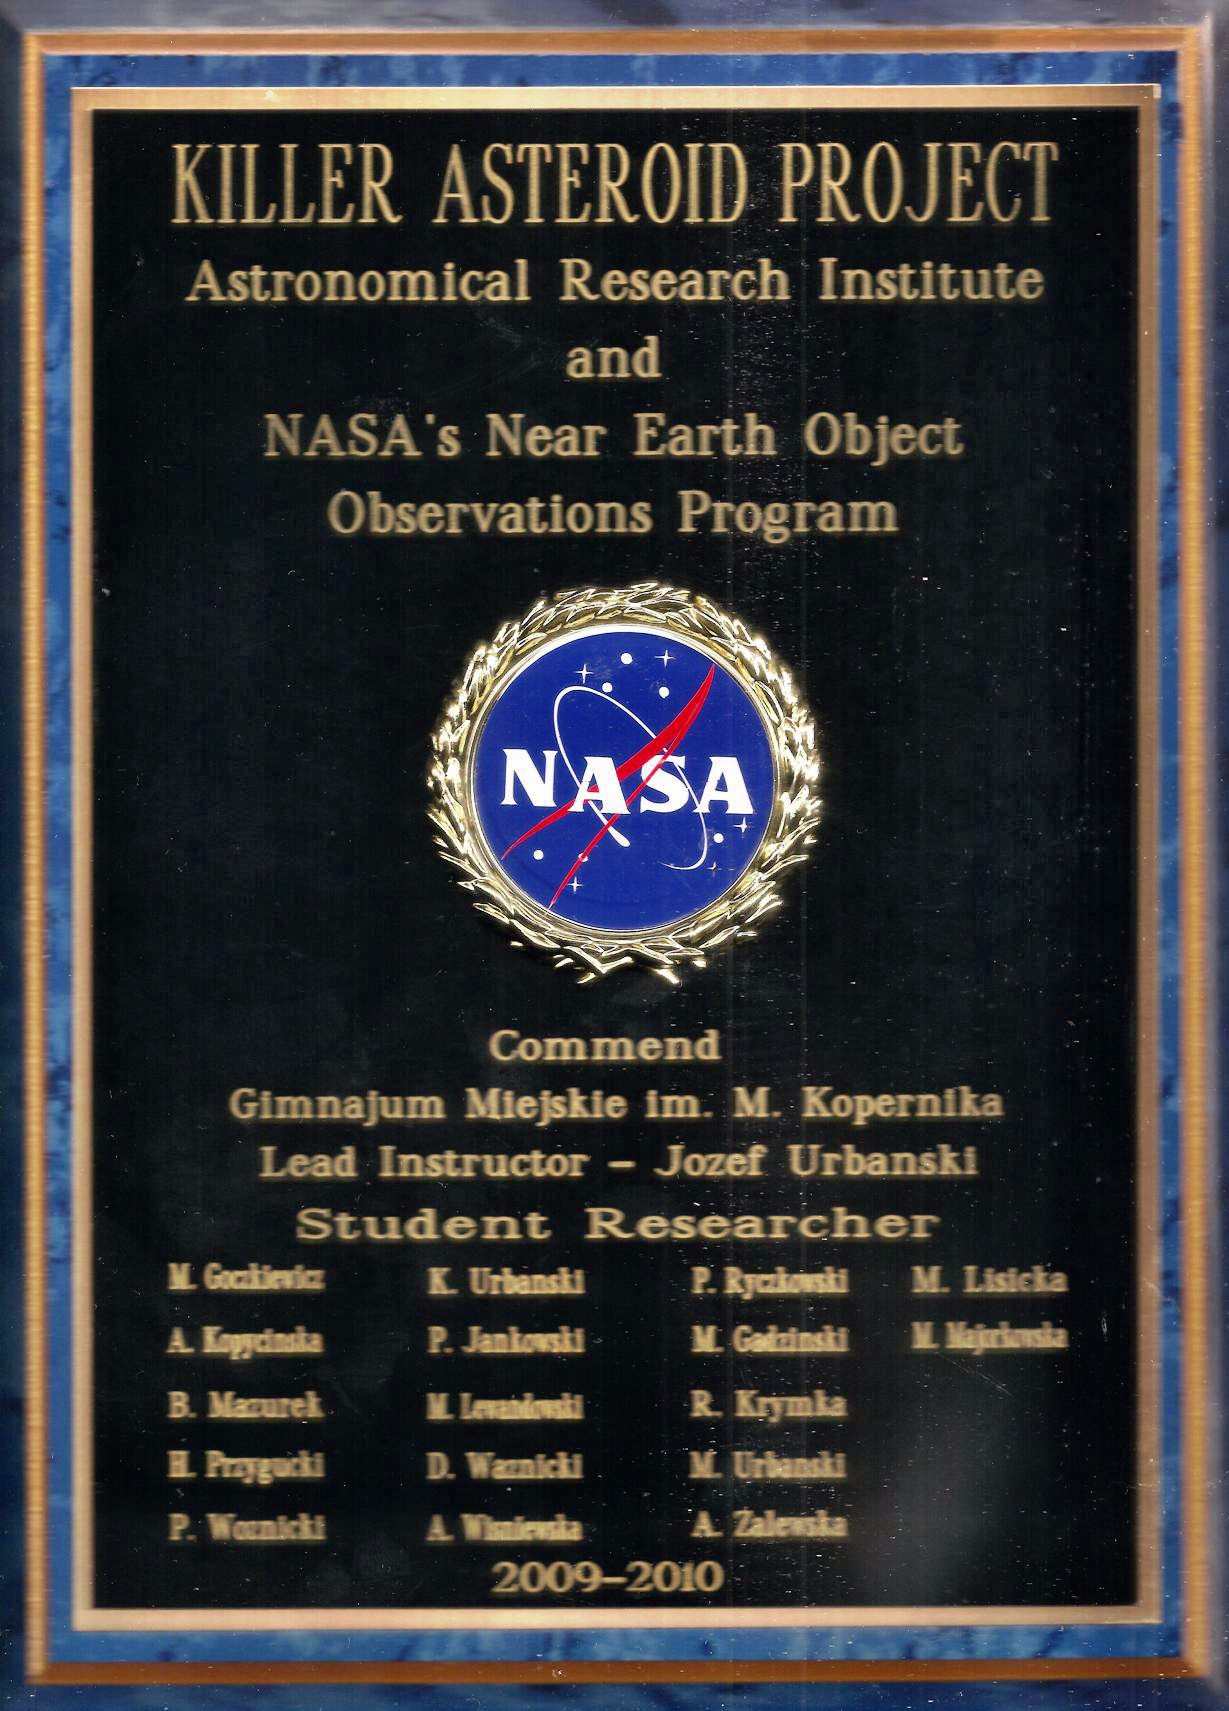 Zdjcie pomitkowej tablicy NASA i przykadowy dyplom.